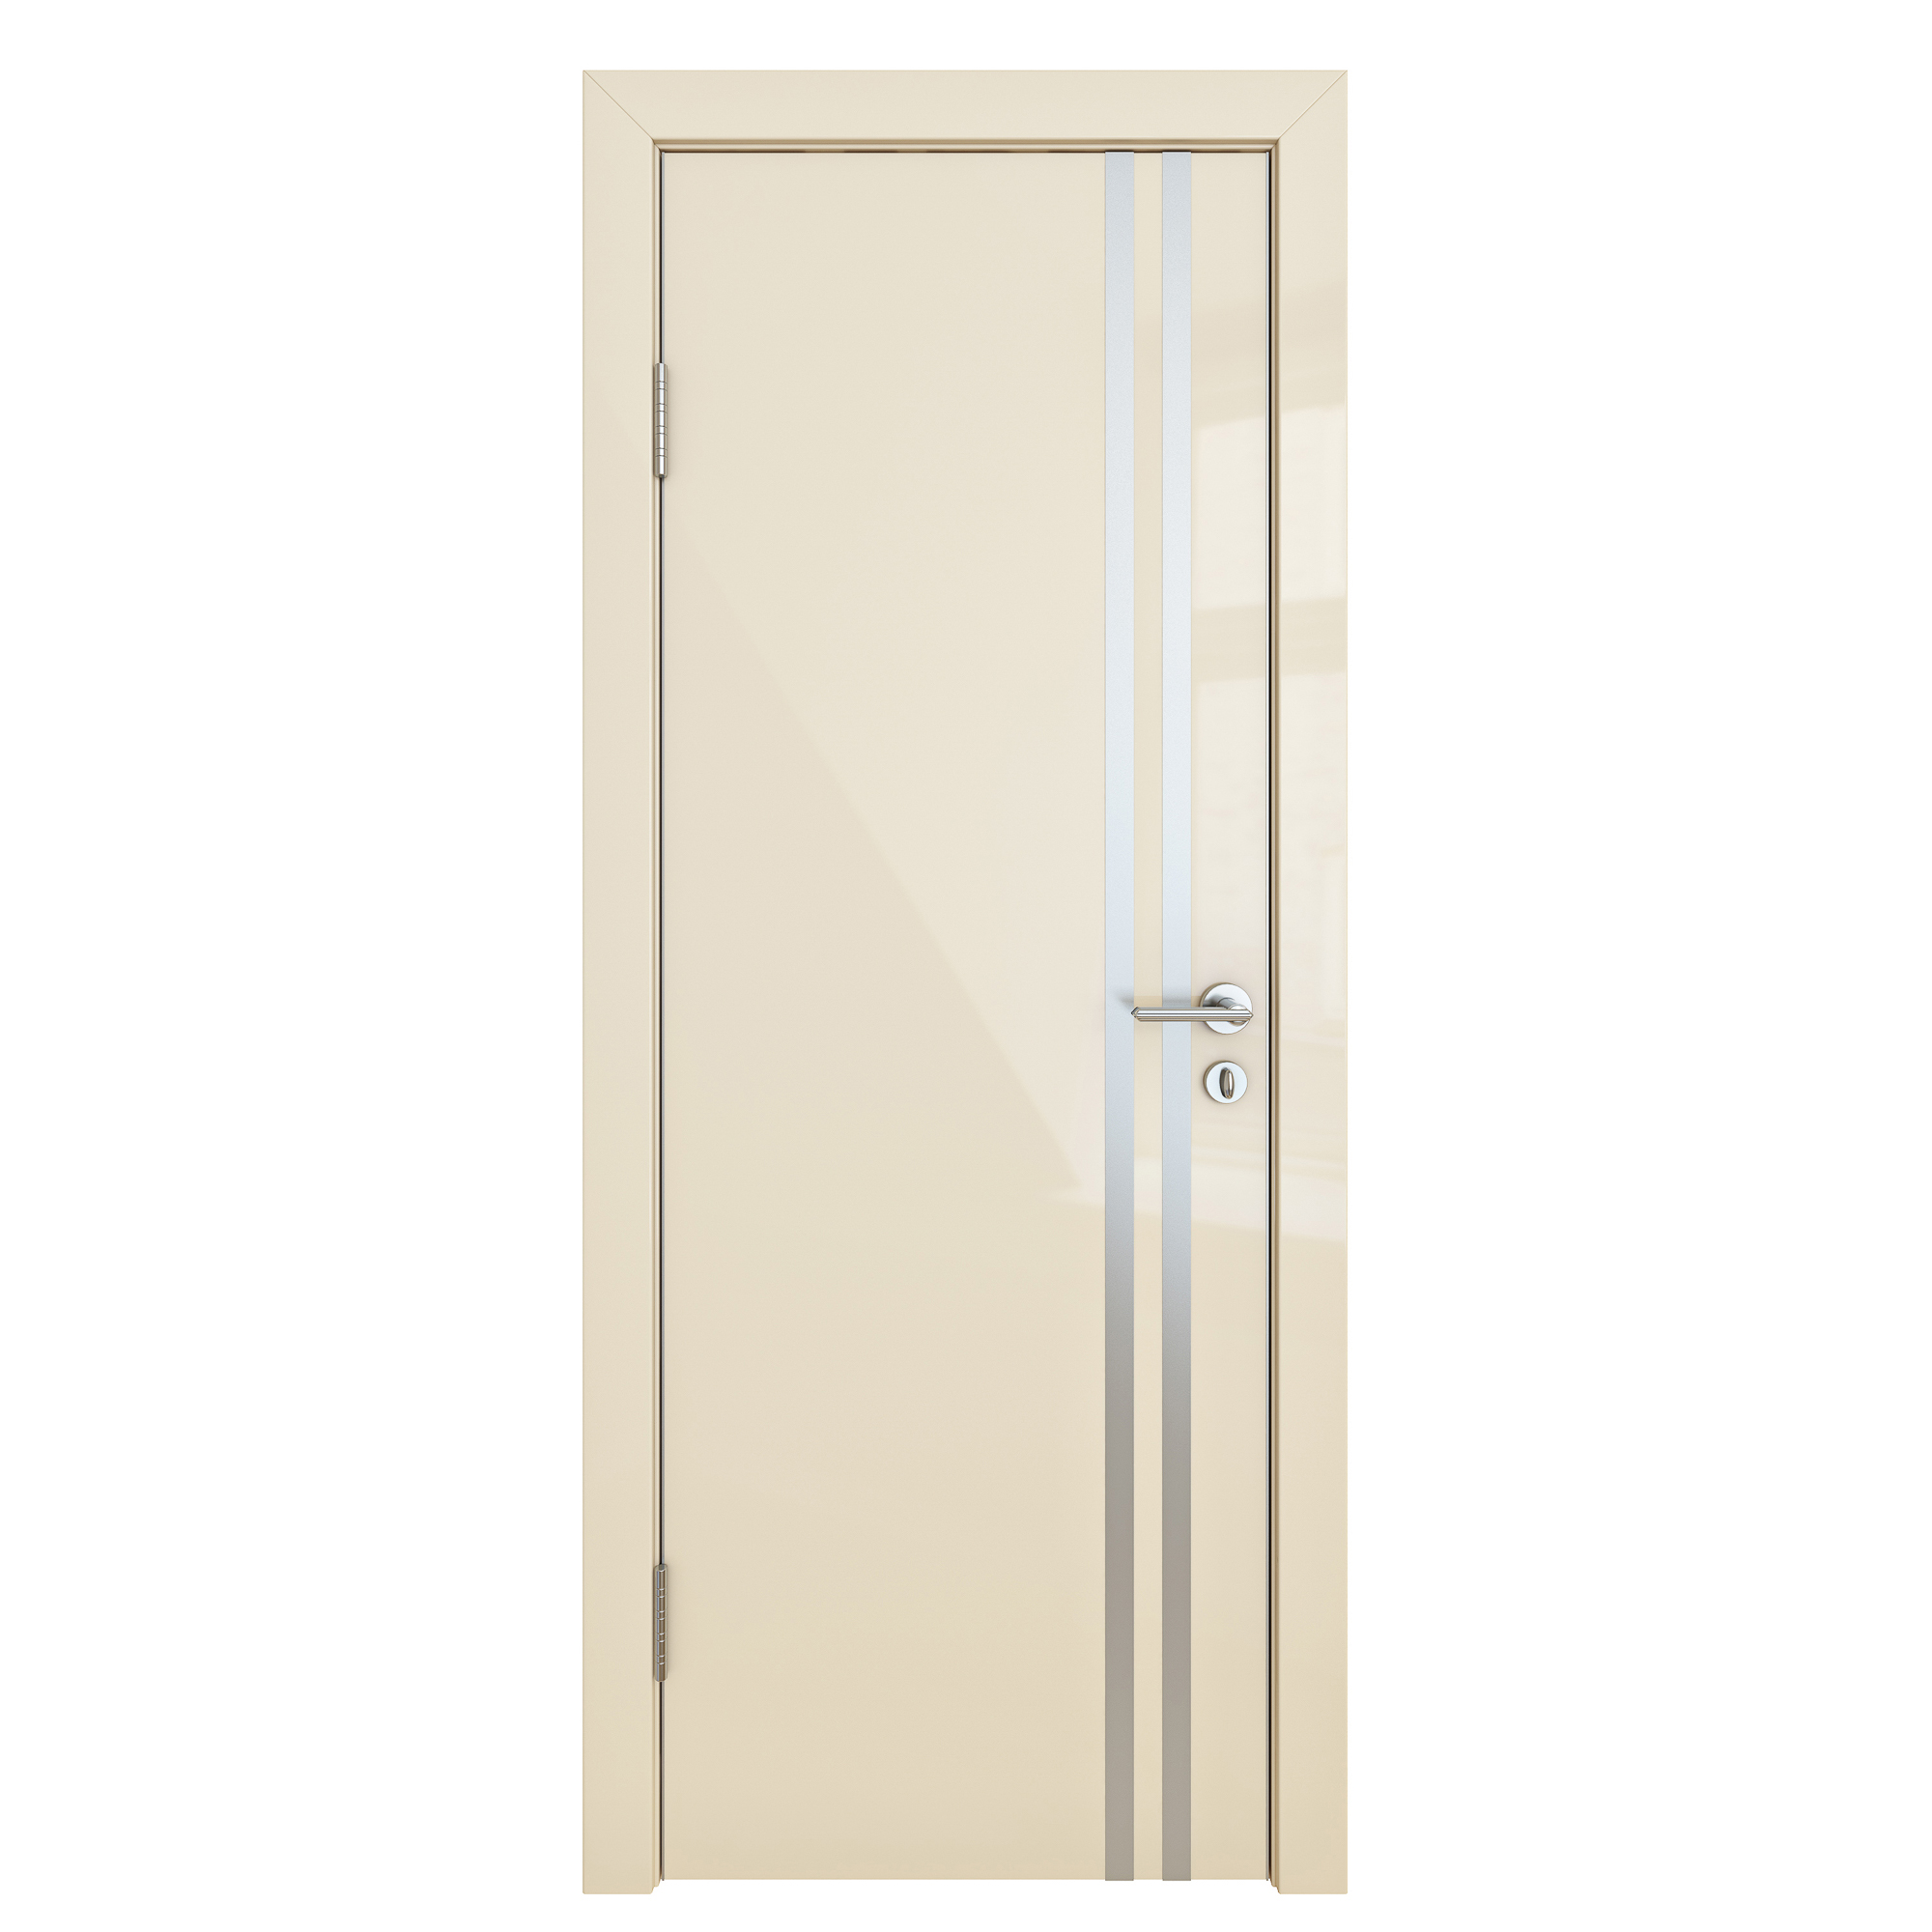 фото Межкомнатная шумоизоляционная дверь дг-606 ваниль глянец 200х70 дверная линия